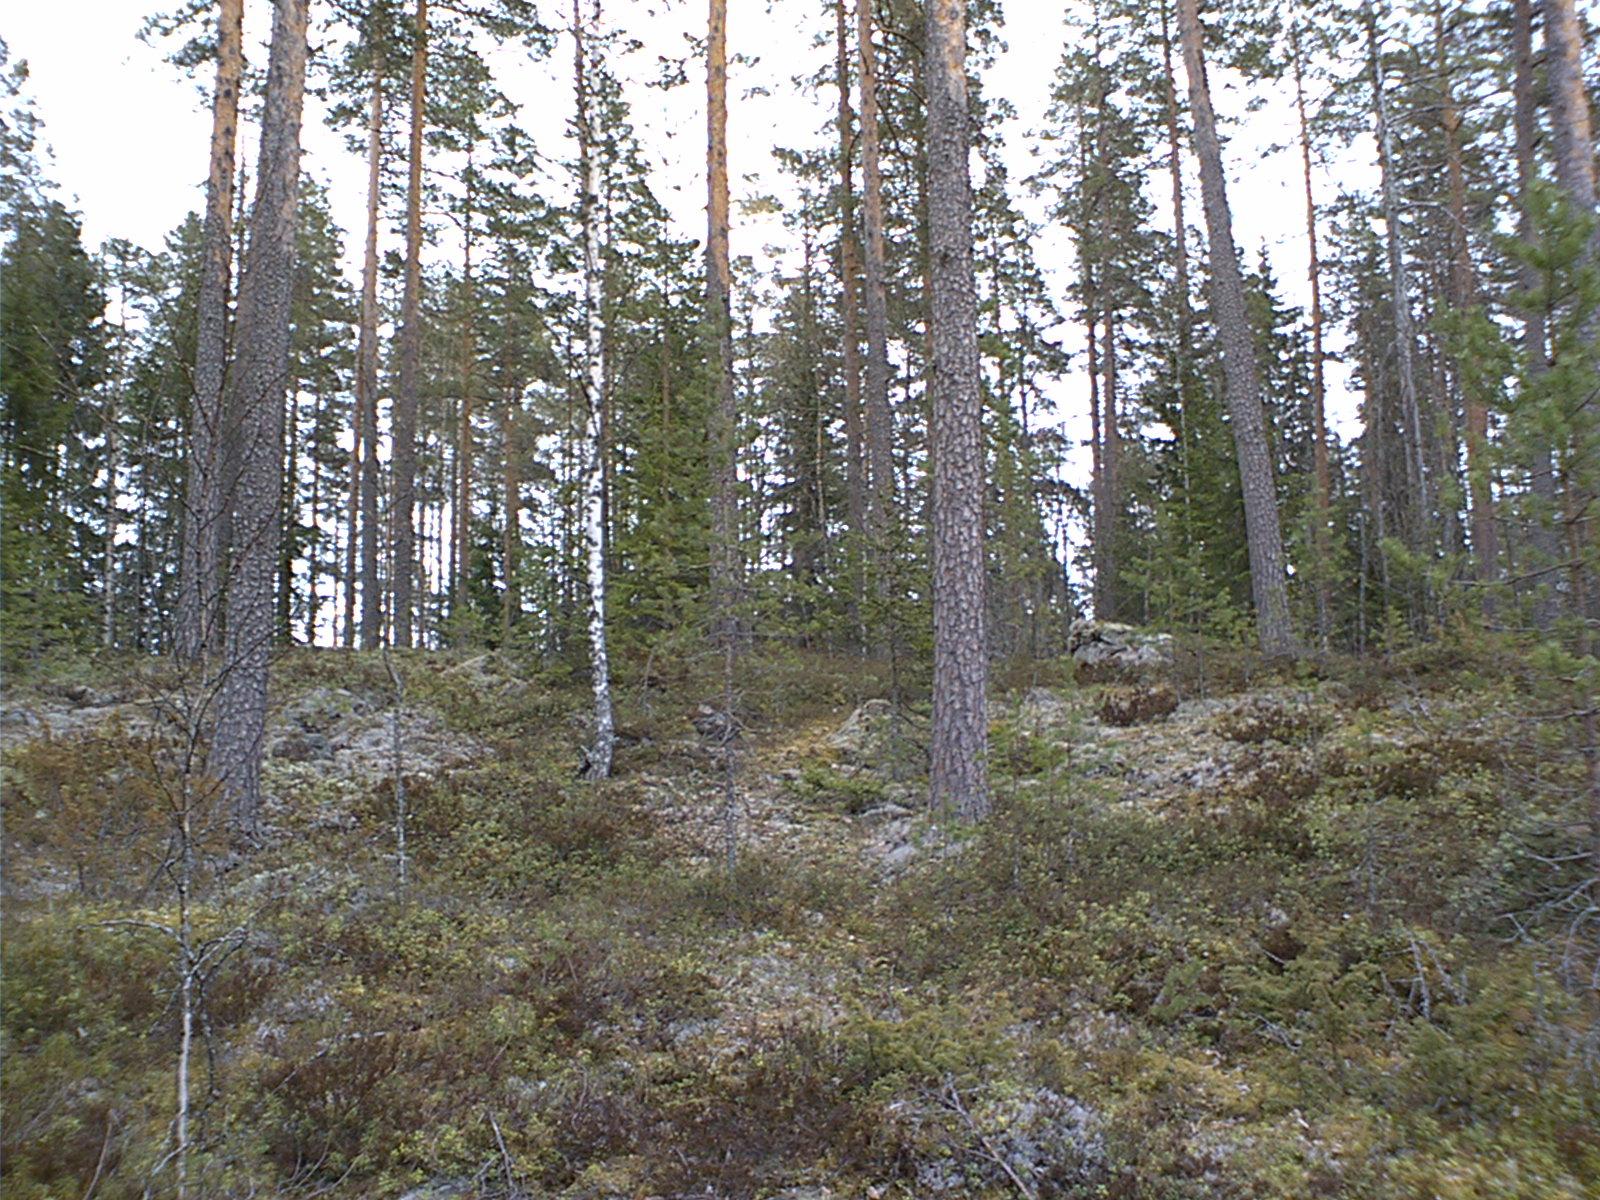 Havupuuvaltainen metsä kasvaa loivassa kivisessä rinteessä.